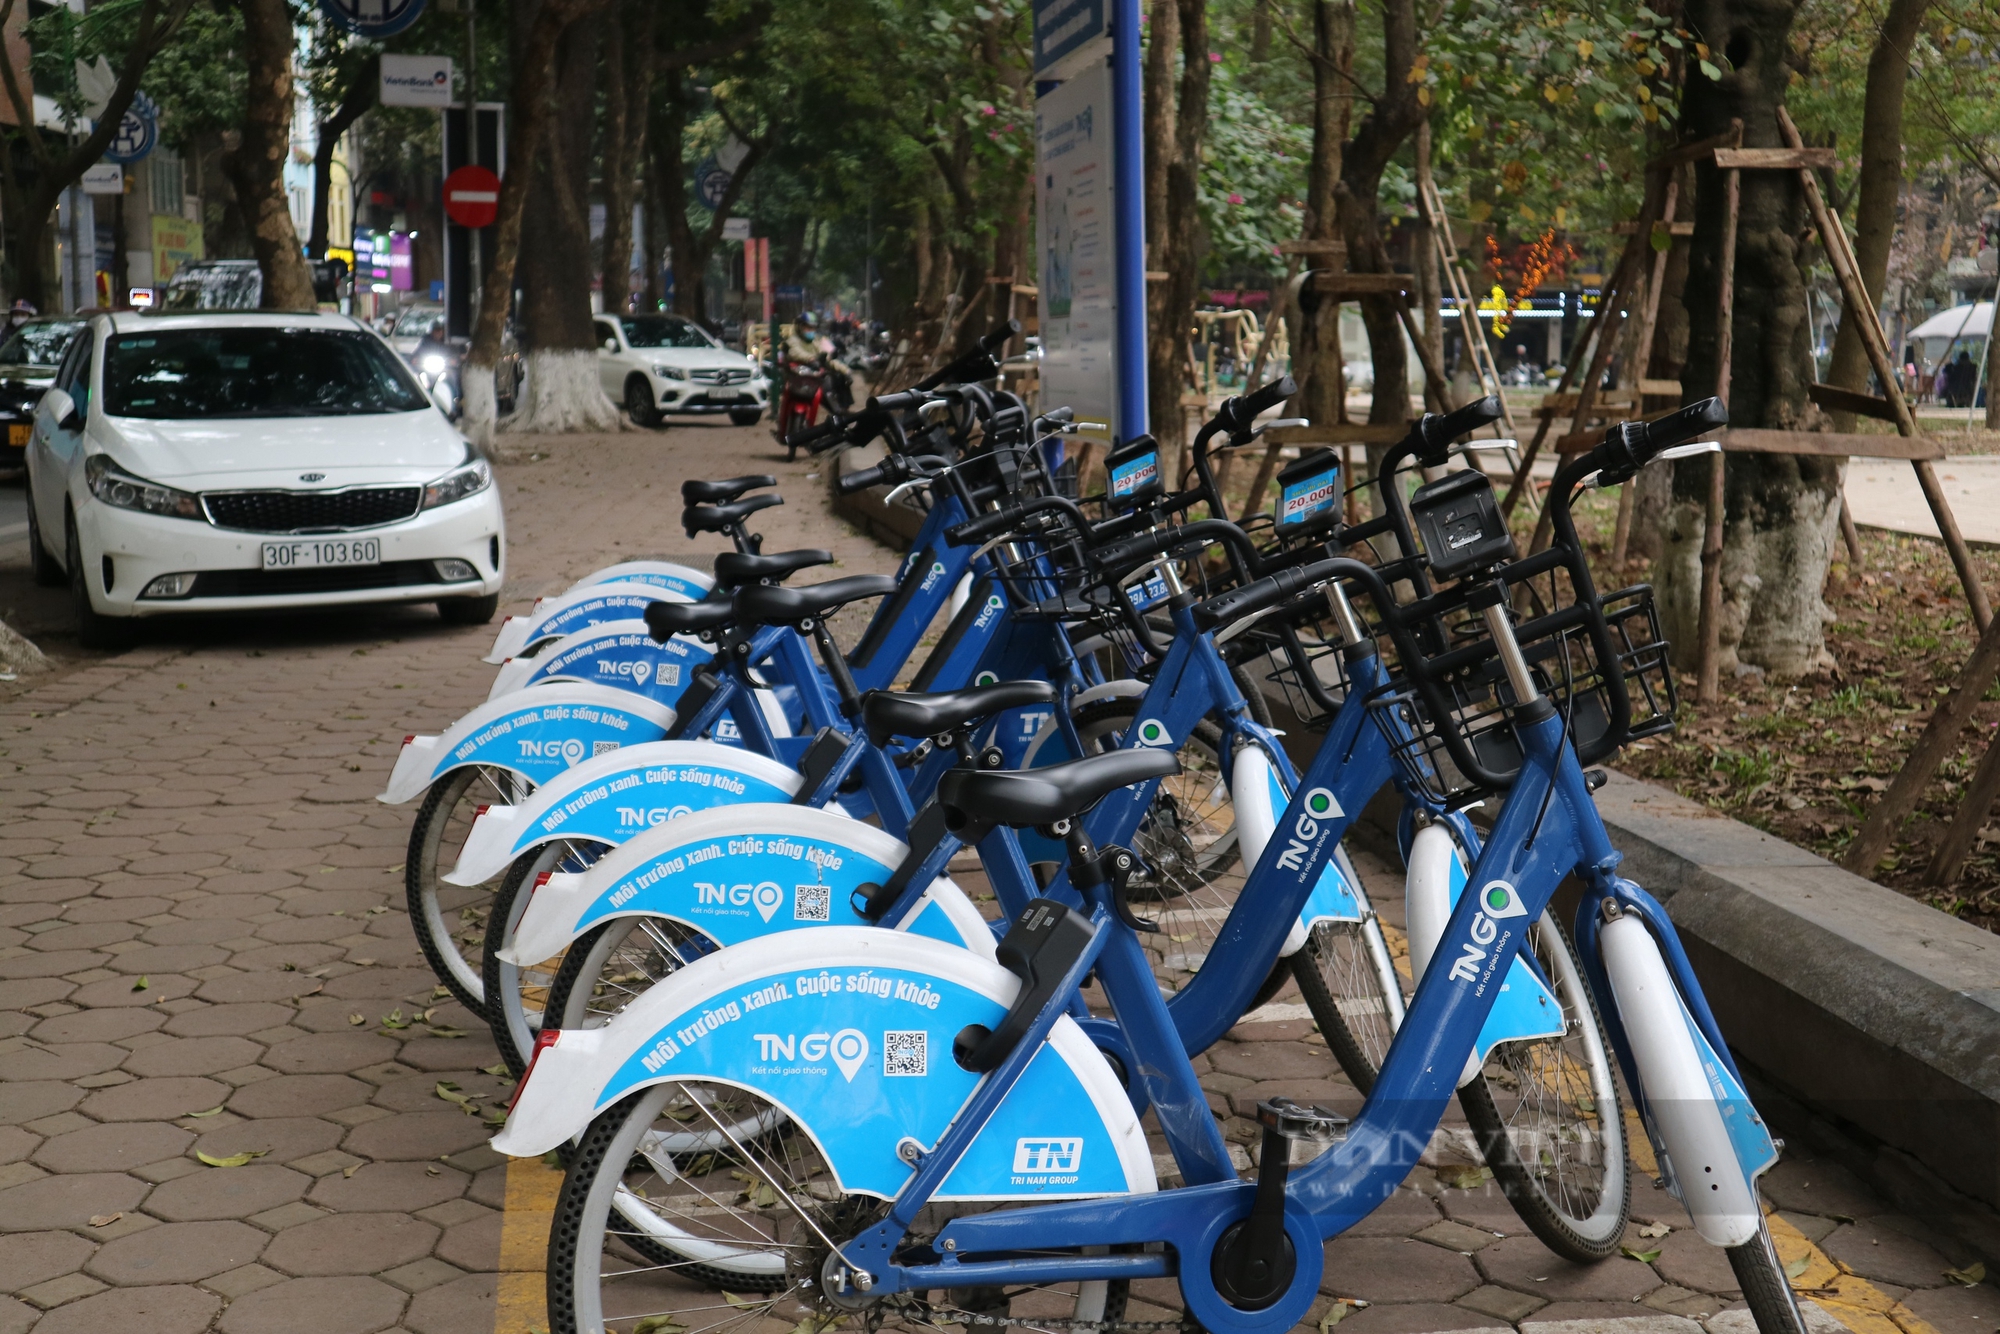 Dịch vụ xe đạp công cộng Hà Nội được người dân sử dụng gần 1.150 lượt/ngày - Ảnh 1.